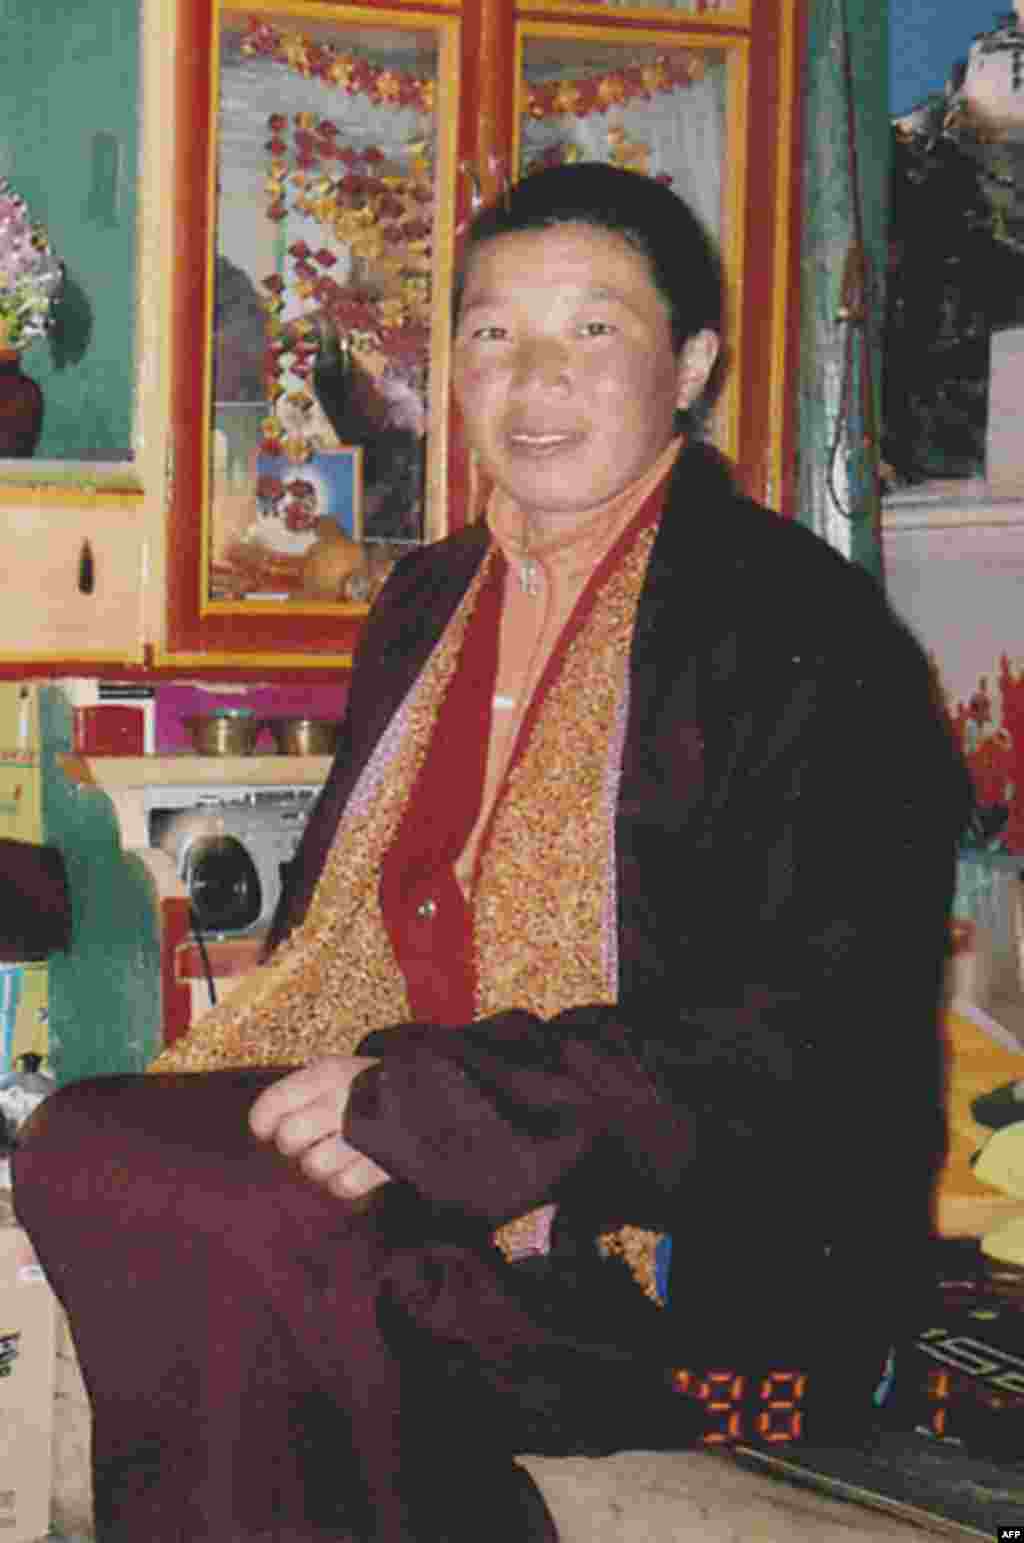 Ảnh chụp trong nhà của ni cô Palden Choetso vào năm 1998. Ngày 3 tháng 11 năm 2011, ni cô 35 tuổi này đã tự thiêu để phản đối chính sách kềm kẹp tôn giáo của Trung Quốc tại Tây Tạng. Ni cô là một trong 11 người Tây Tạng, đa số là tu sĩ, tự thiêu trong năm